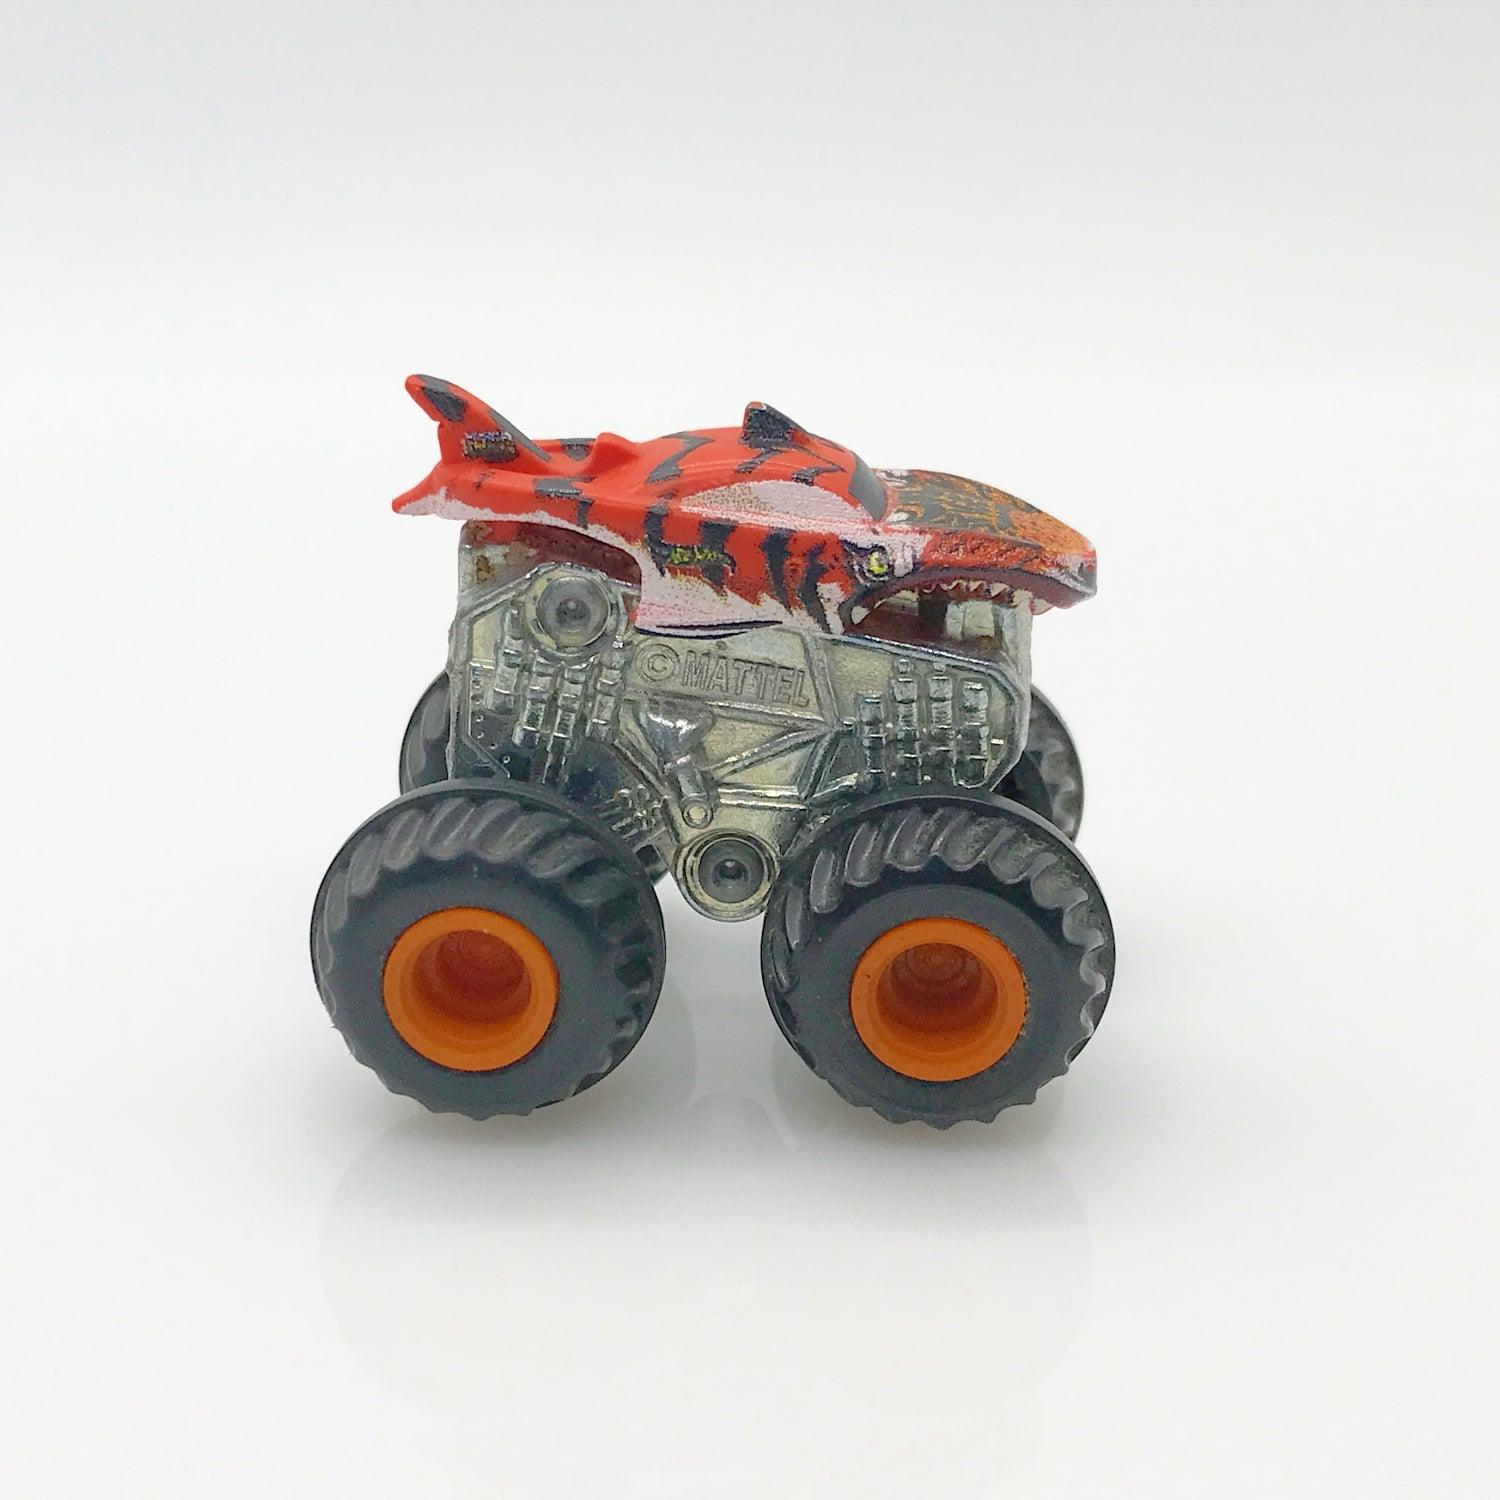 Hot Wheels Orange "Tiger Shark" Monster Truck (2018-9) - Lamoree’s Vintage